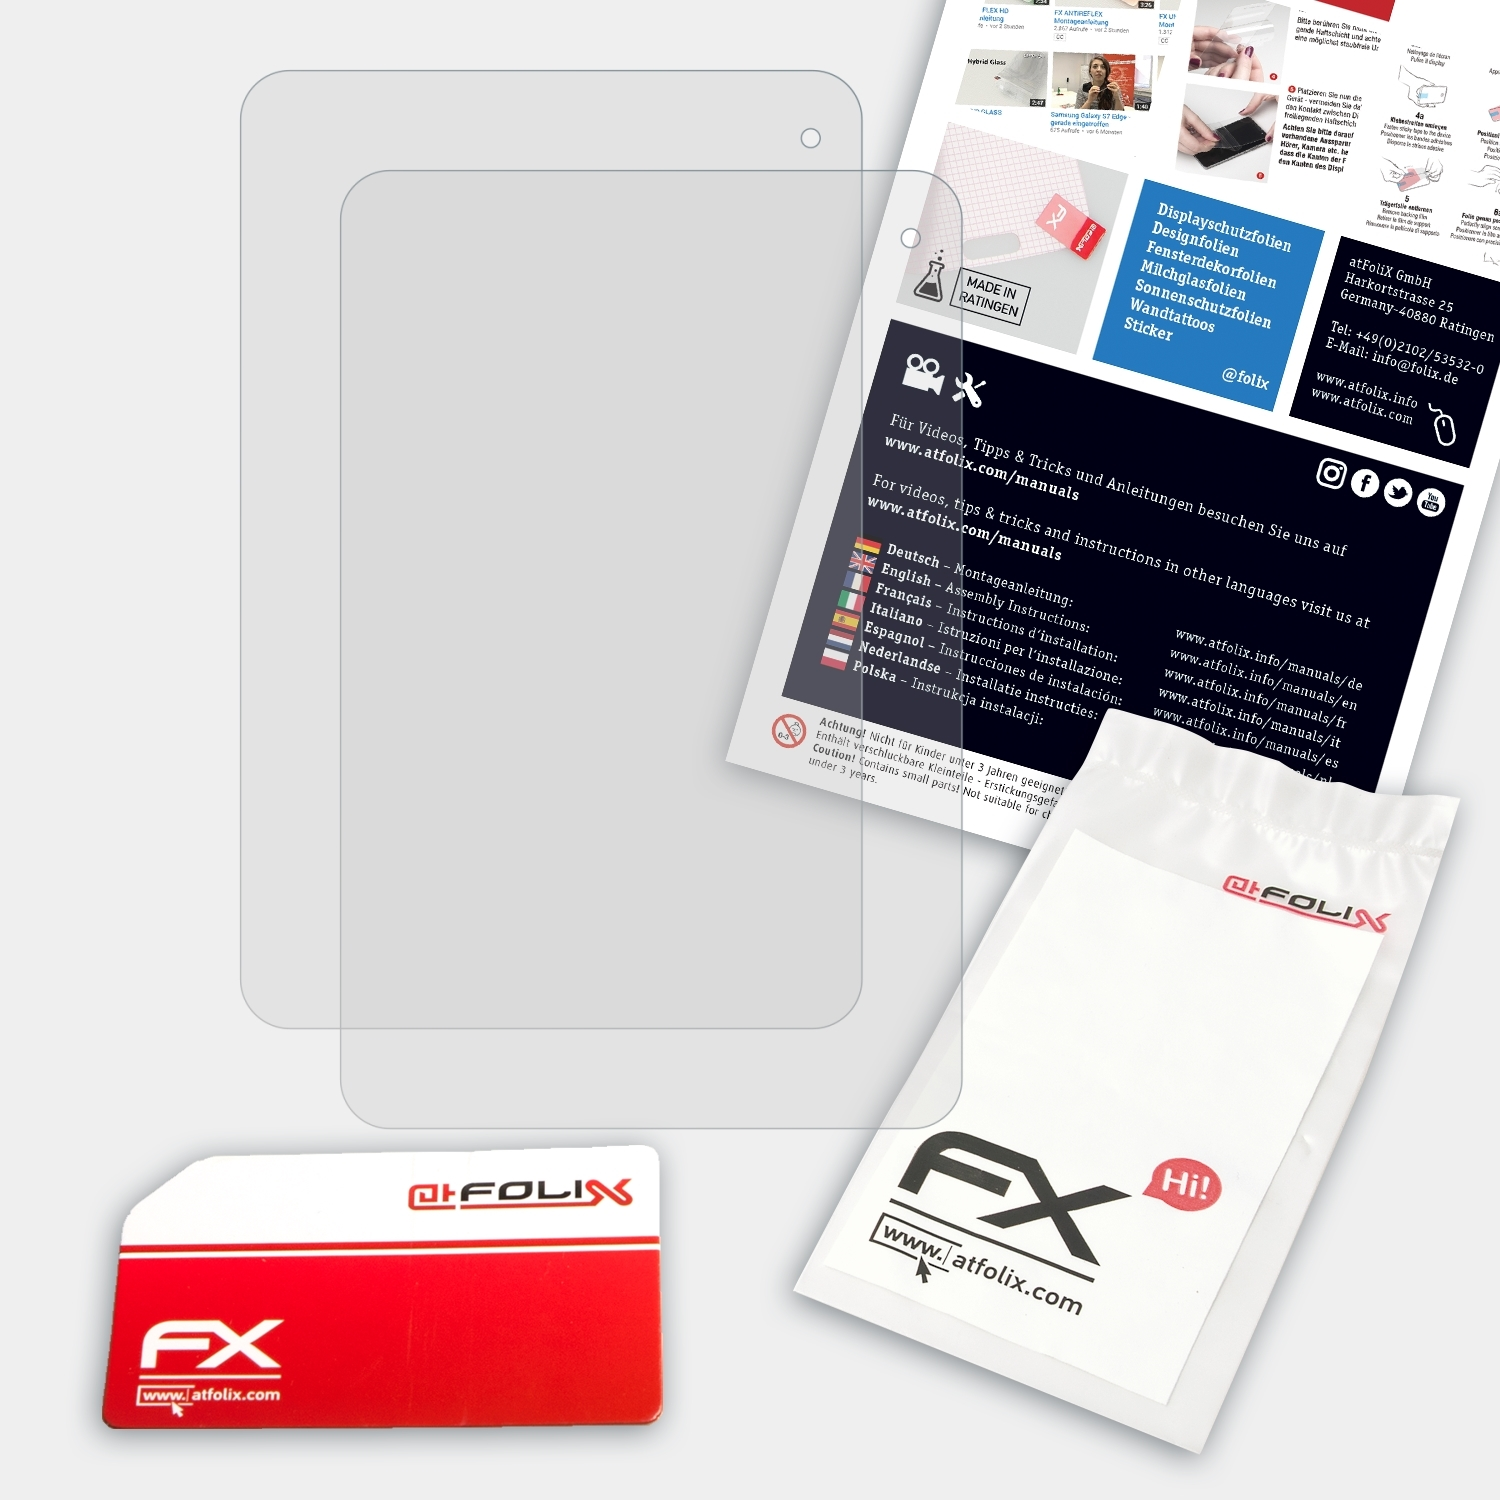 Iconia B1-710) FX-Antireflex Displayschutz(für 2x ATFOLIX Acer